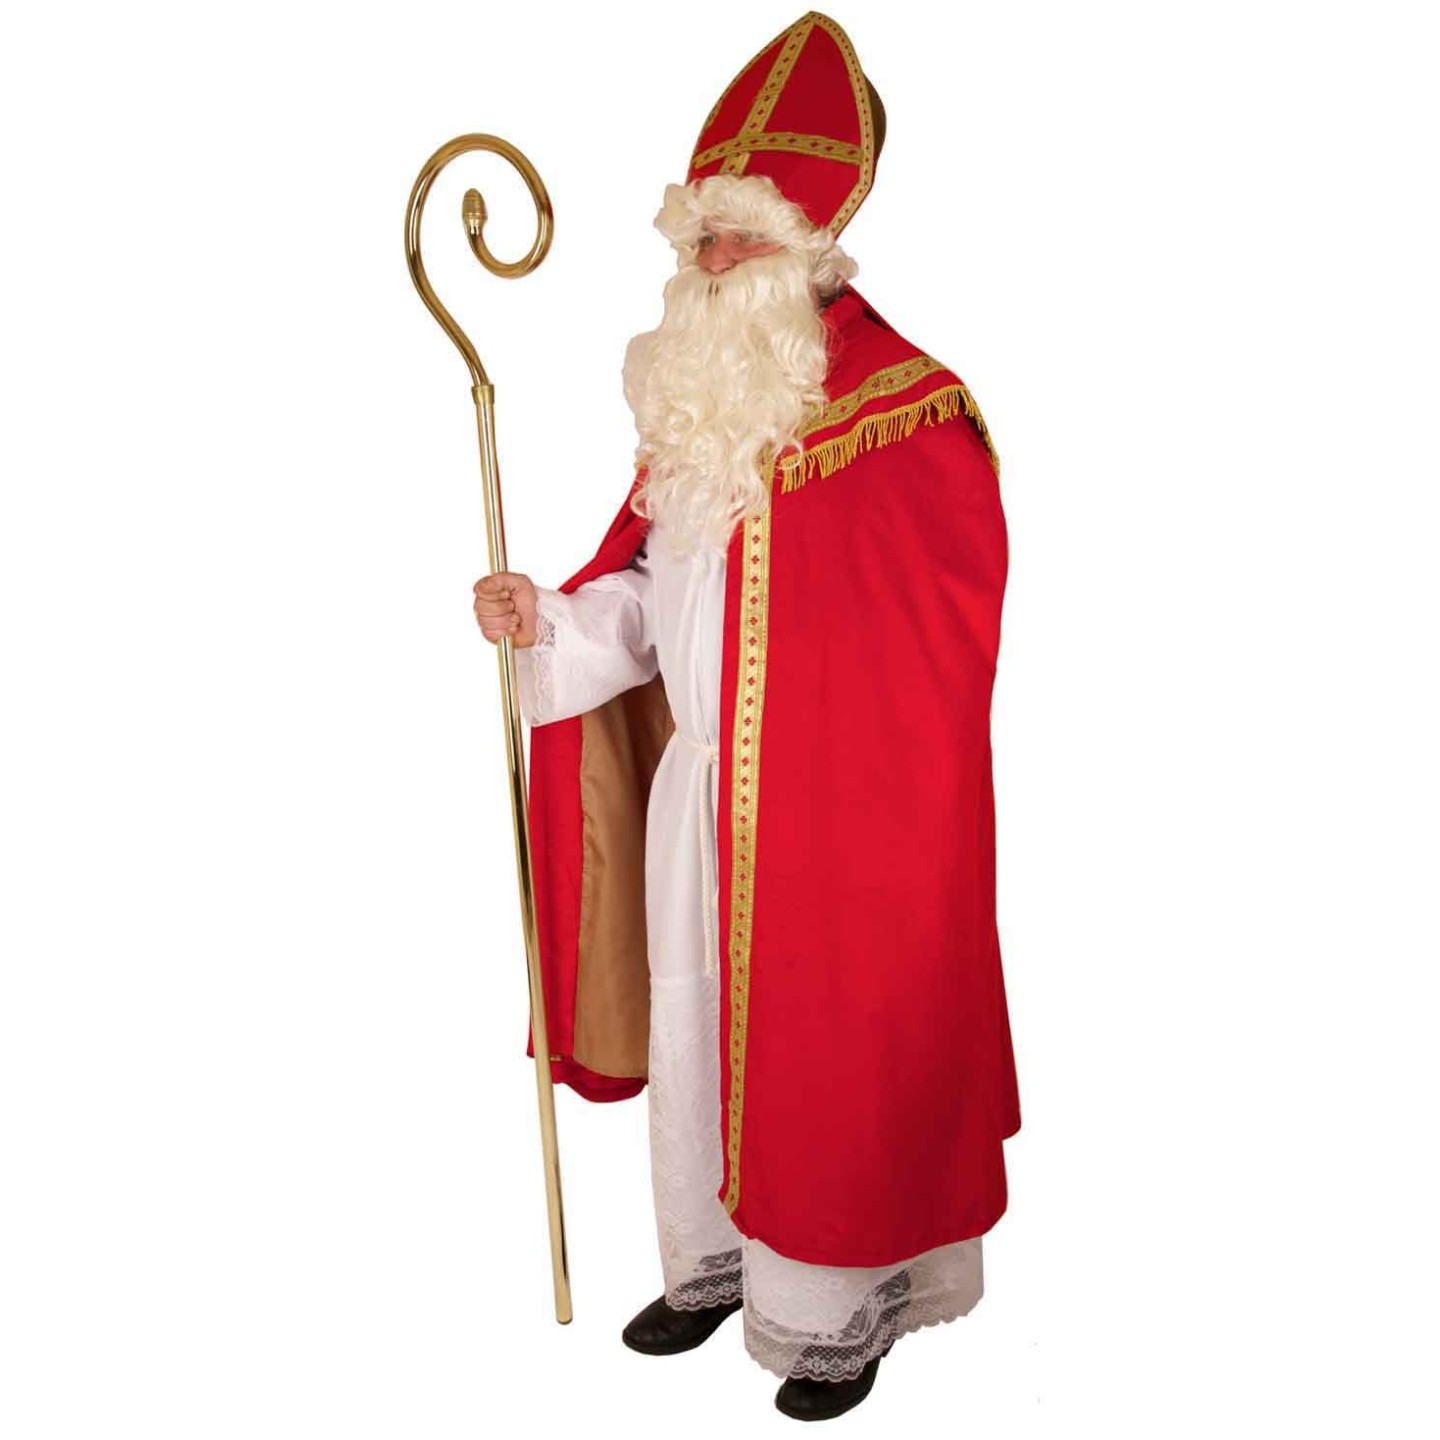 Aja audit Viool Goedkoop Sinterklaas kostuum - Sinterklaaspak kopen ? | Jokershop.be